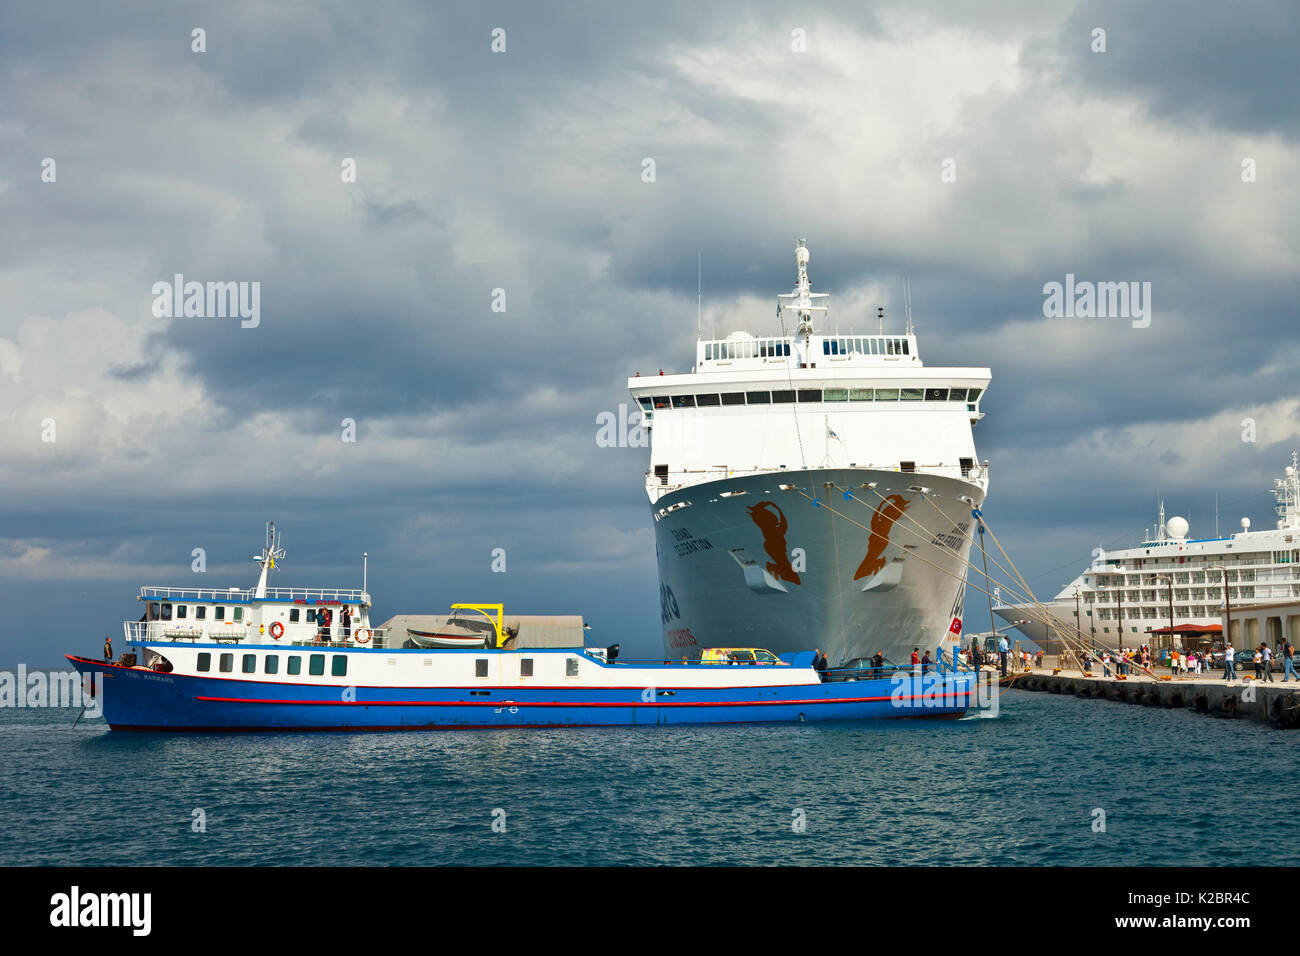 Vista di una nave da crociera ormeggiata presso la città di Rodi, Rodi, Grecia, Mediterraneo. Tutti i non-usi editoriali deve essere eliminato singolarmente. Foto Stock